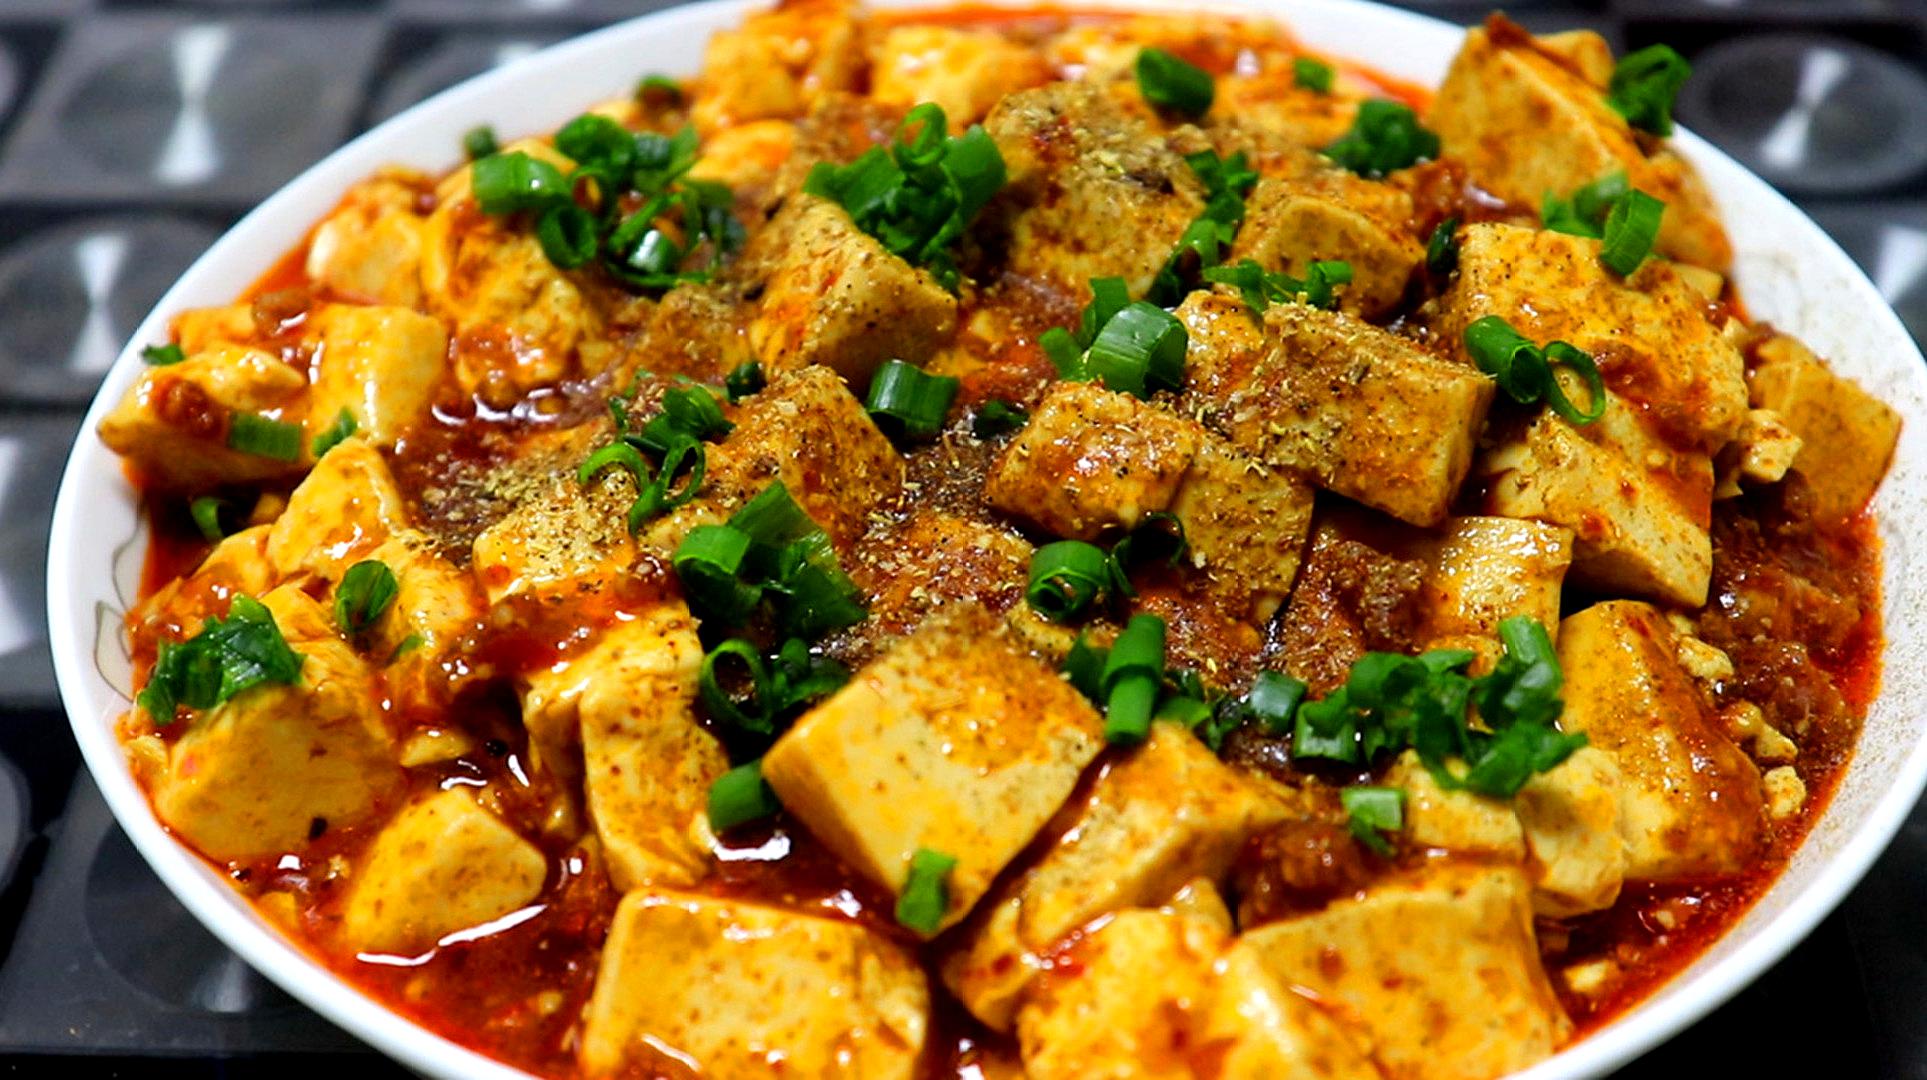 分享六道特色美食的做法,干锅鱼上榜,麻辣豆腐嫩滑爽口